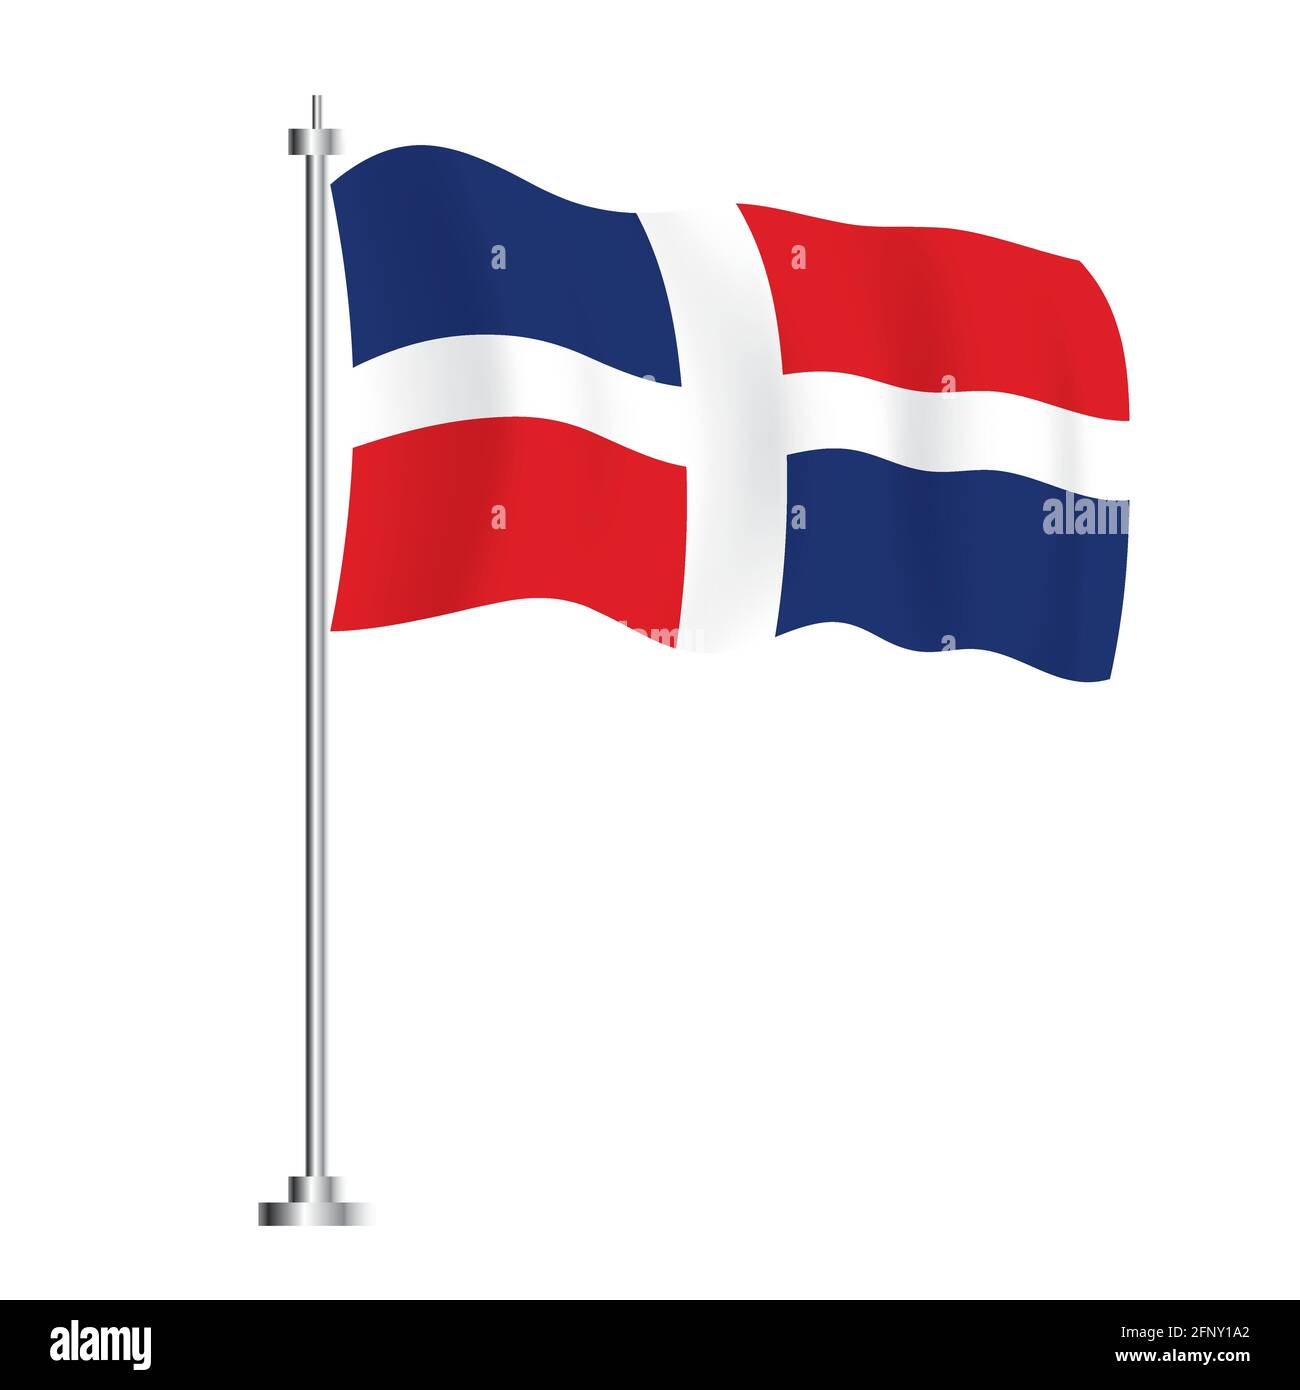 Bandiera della Repubblica Dominicana. Bandiera ad onda isolata del Paese della Repubblica Dominicana. Illustrazione vettoriale. Giorno dell'indipendenza. Illustrazione Vettoriale